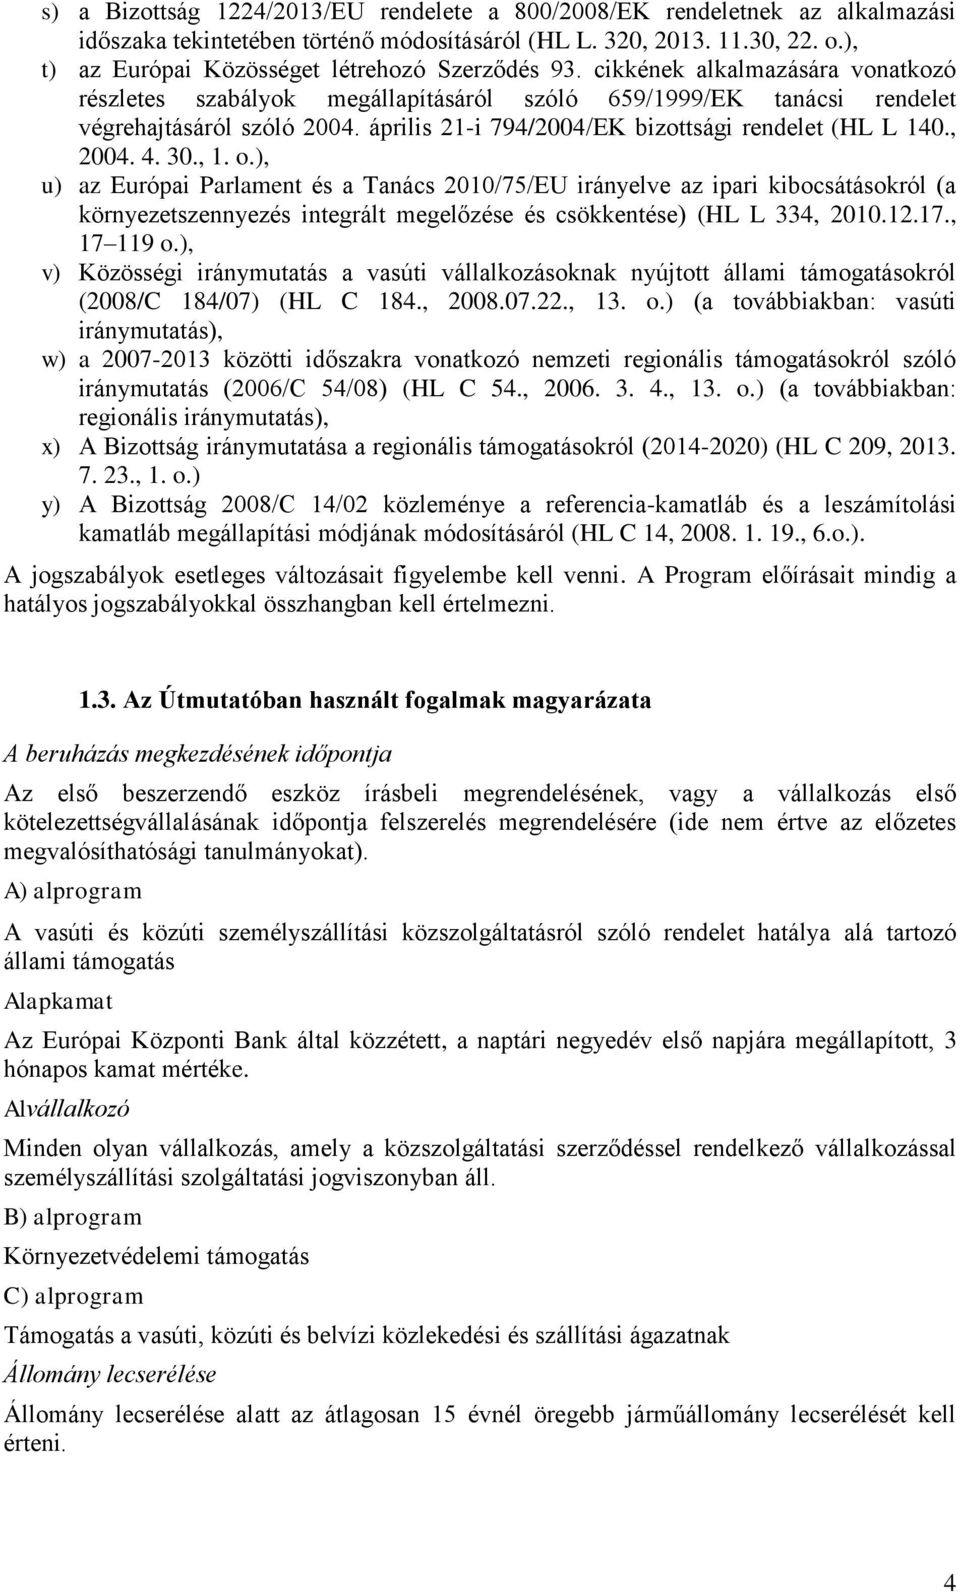 április 21-i 794/2004/EK bizottsági rendelet (HL L 140., 2004. 4. 30., 1. o.